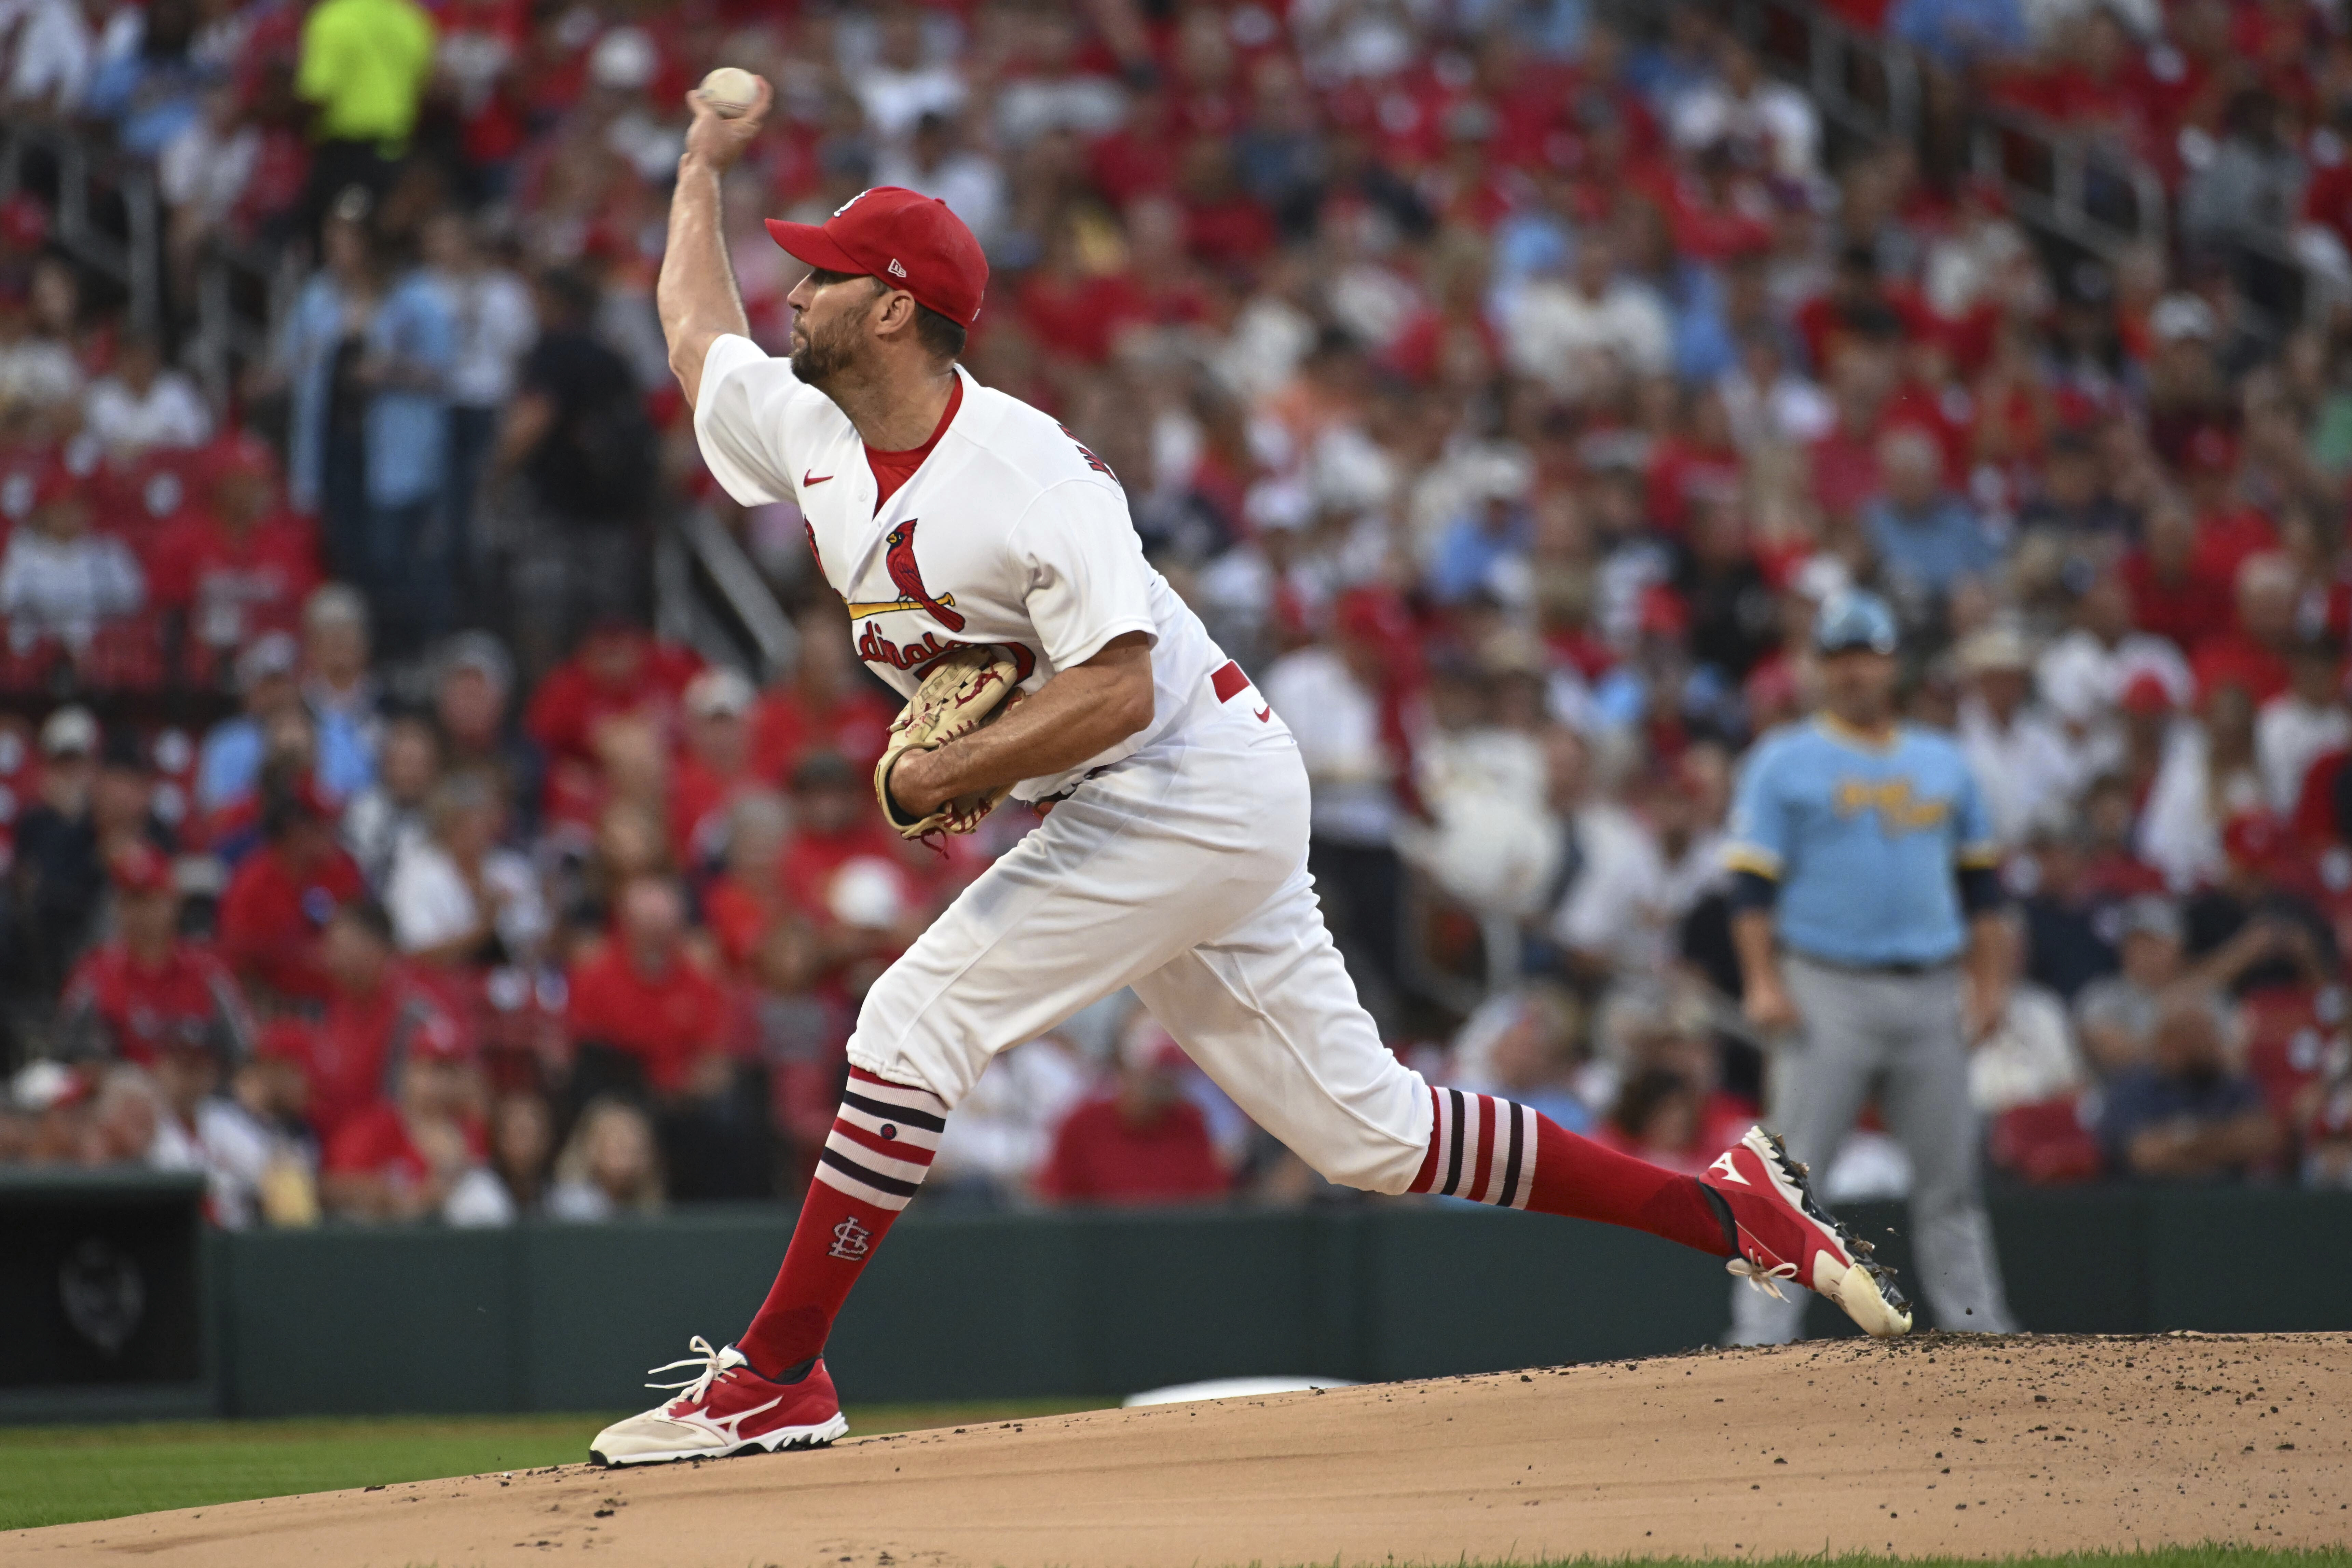 Cardinals' duo Wainwright, Molina chasing history in 2022 season